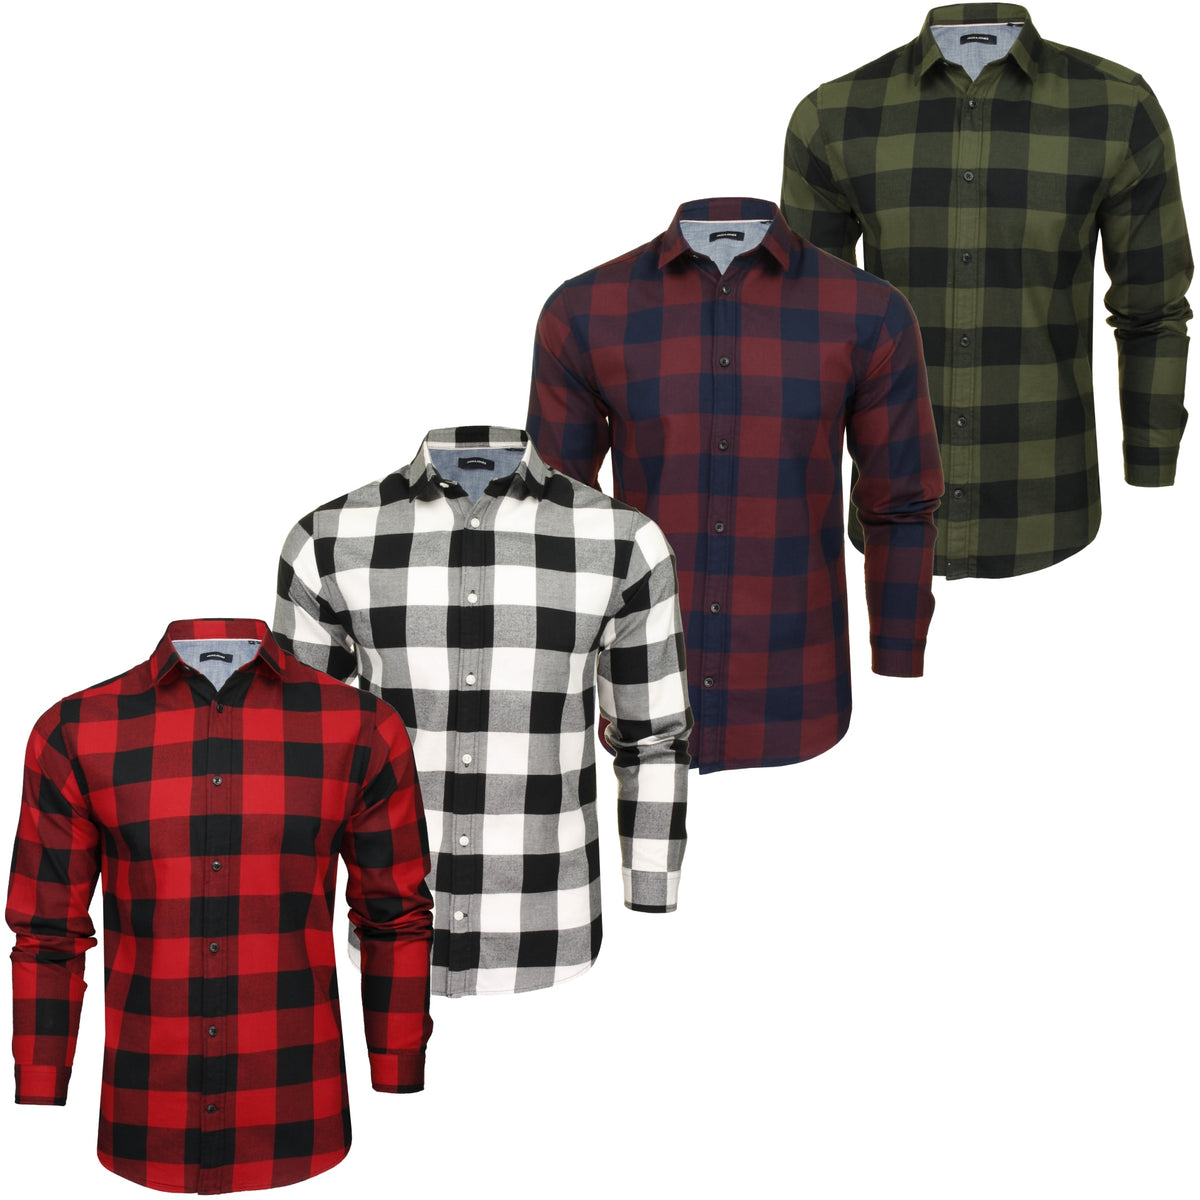 Jack & Jones Men's 'Gingham' Check Twill Shirt - Long Sleeved, 01, 12181602